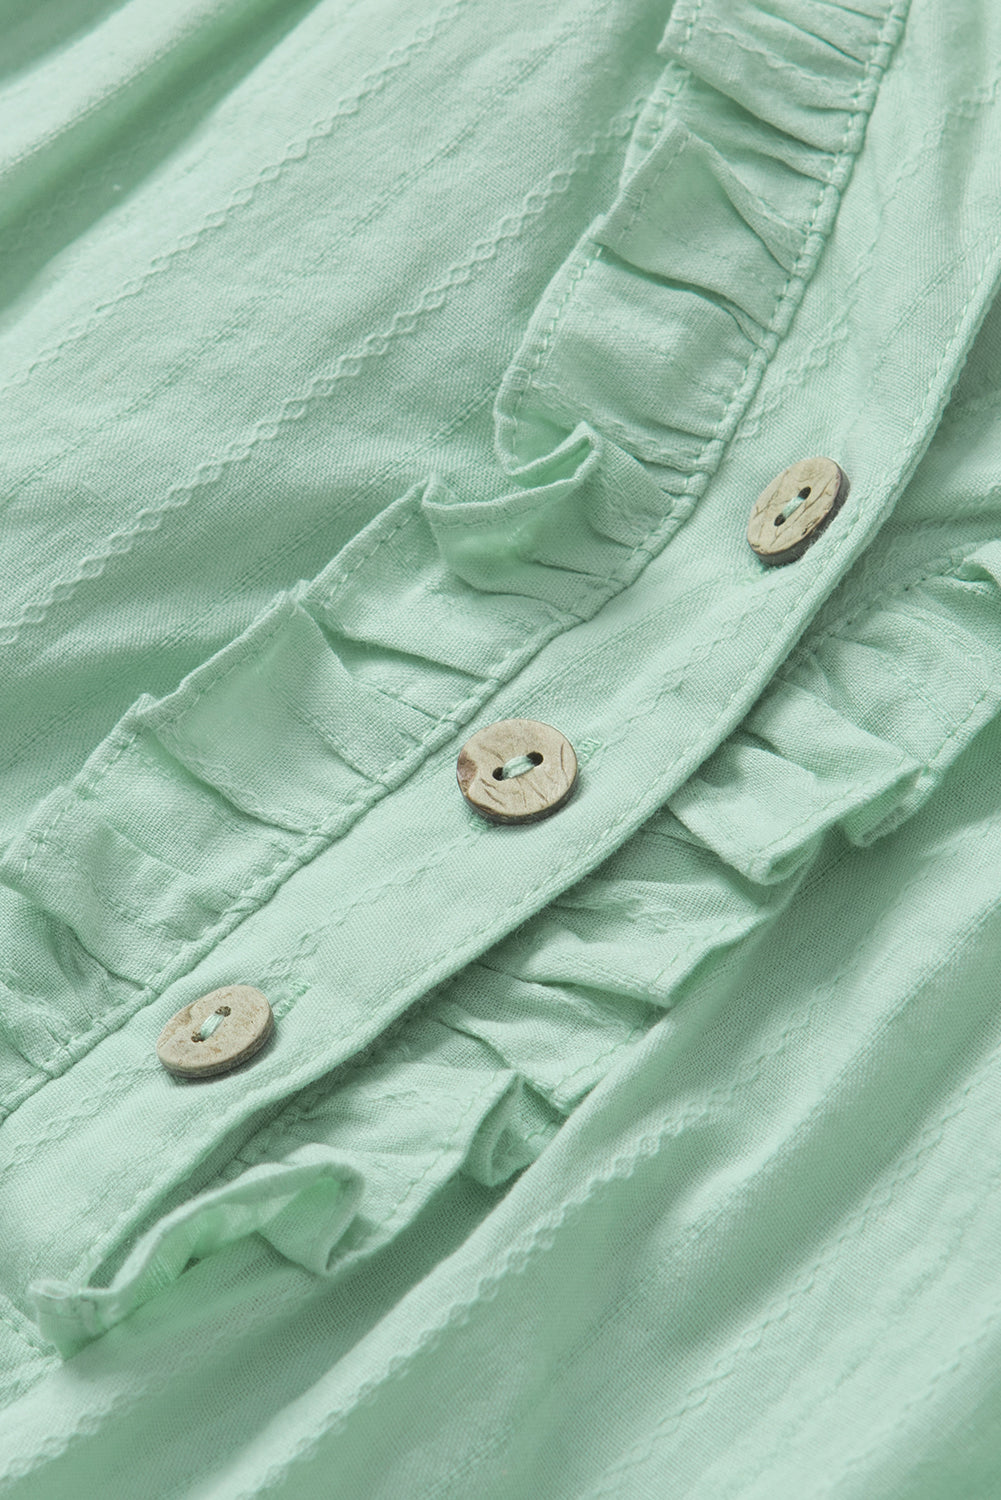 Grün bedruckte, florale Patchwork-Bluse mit Rüschen und Schlitz